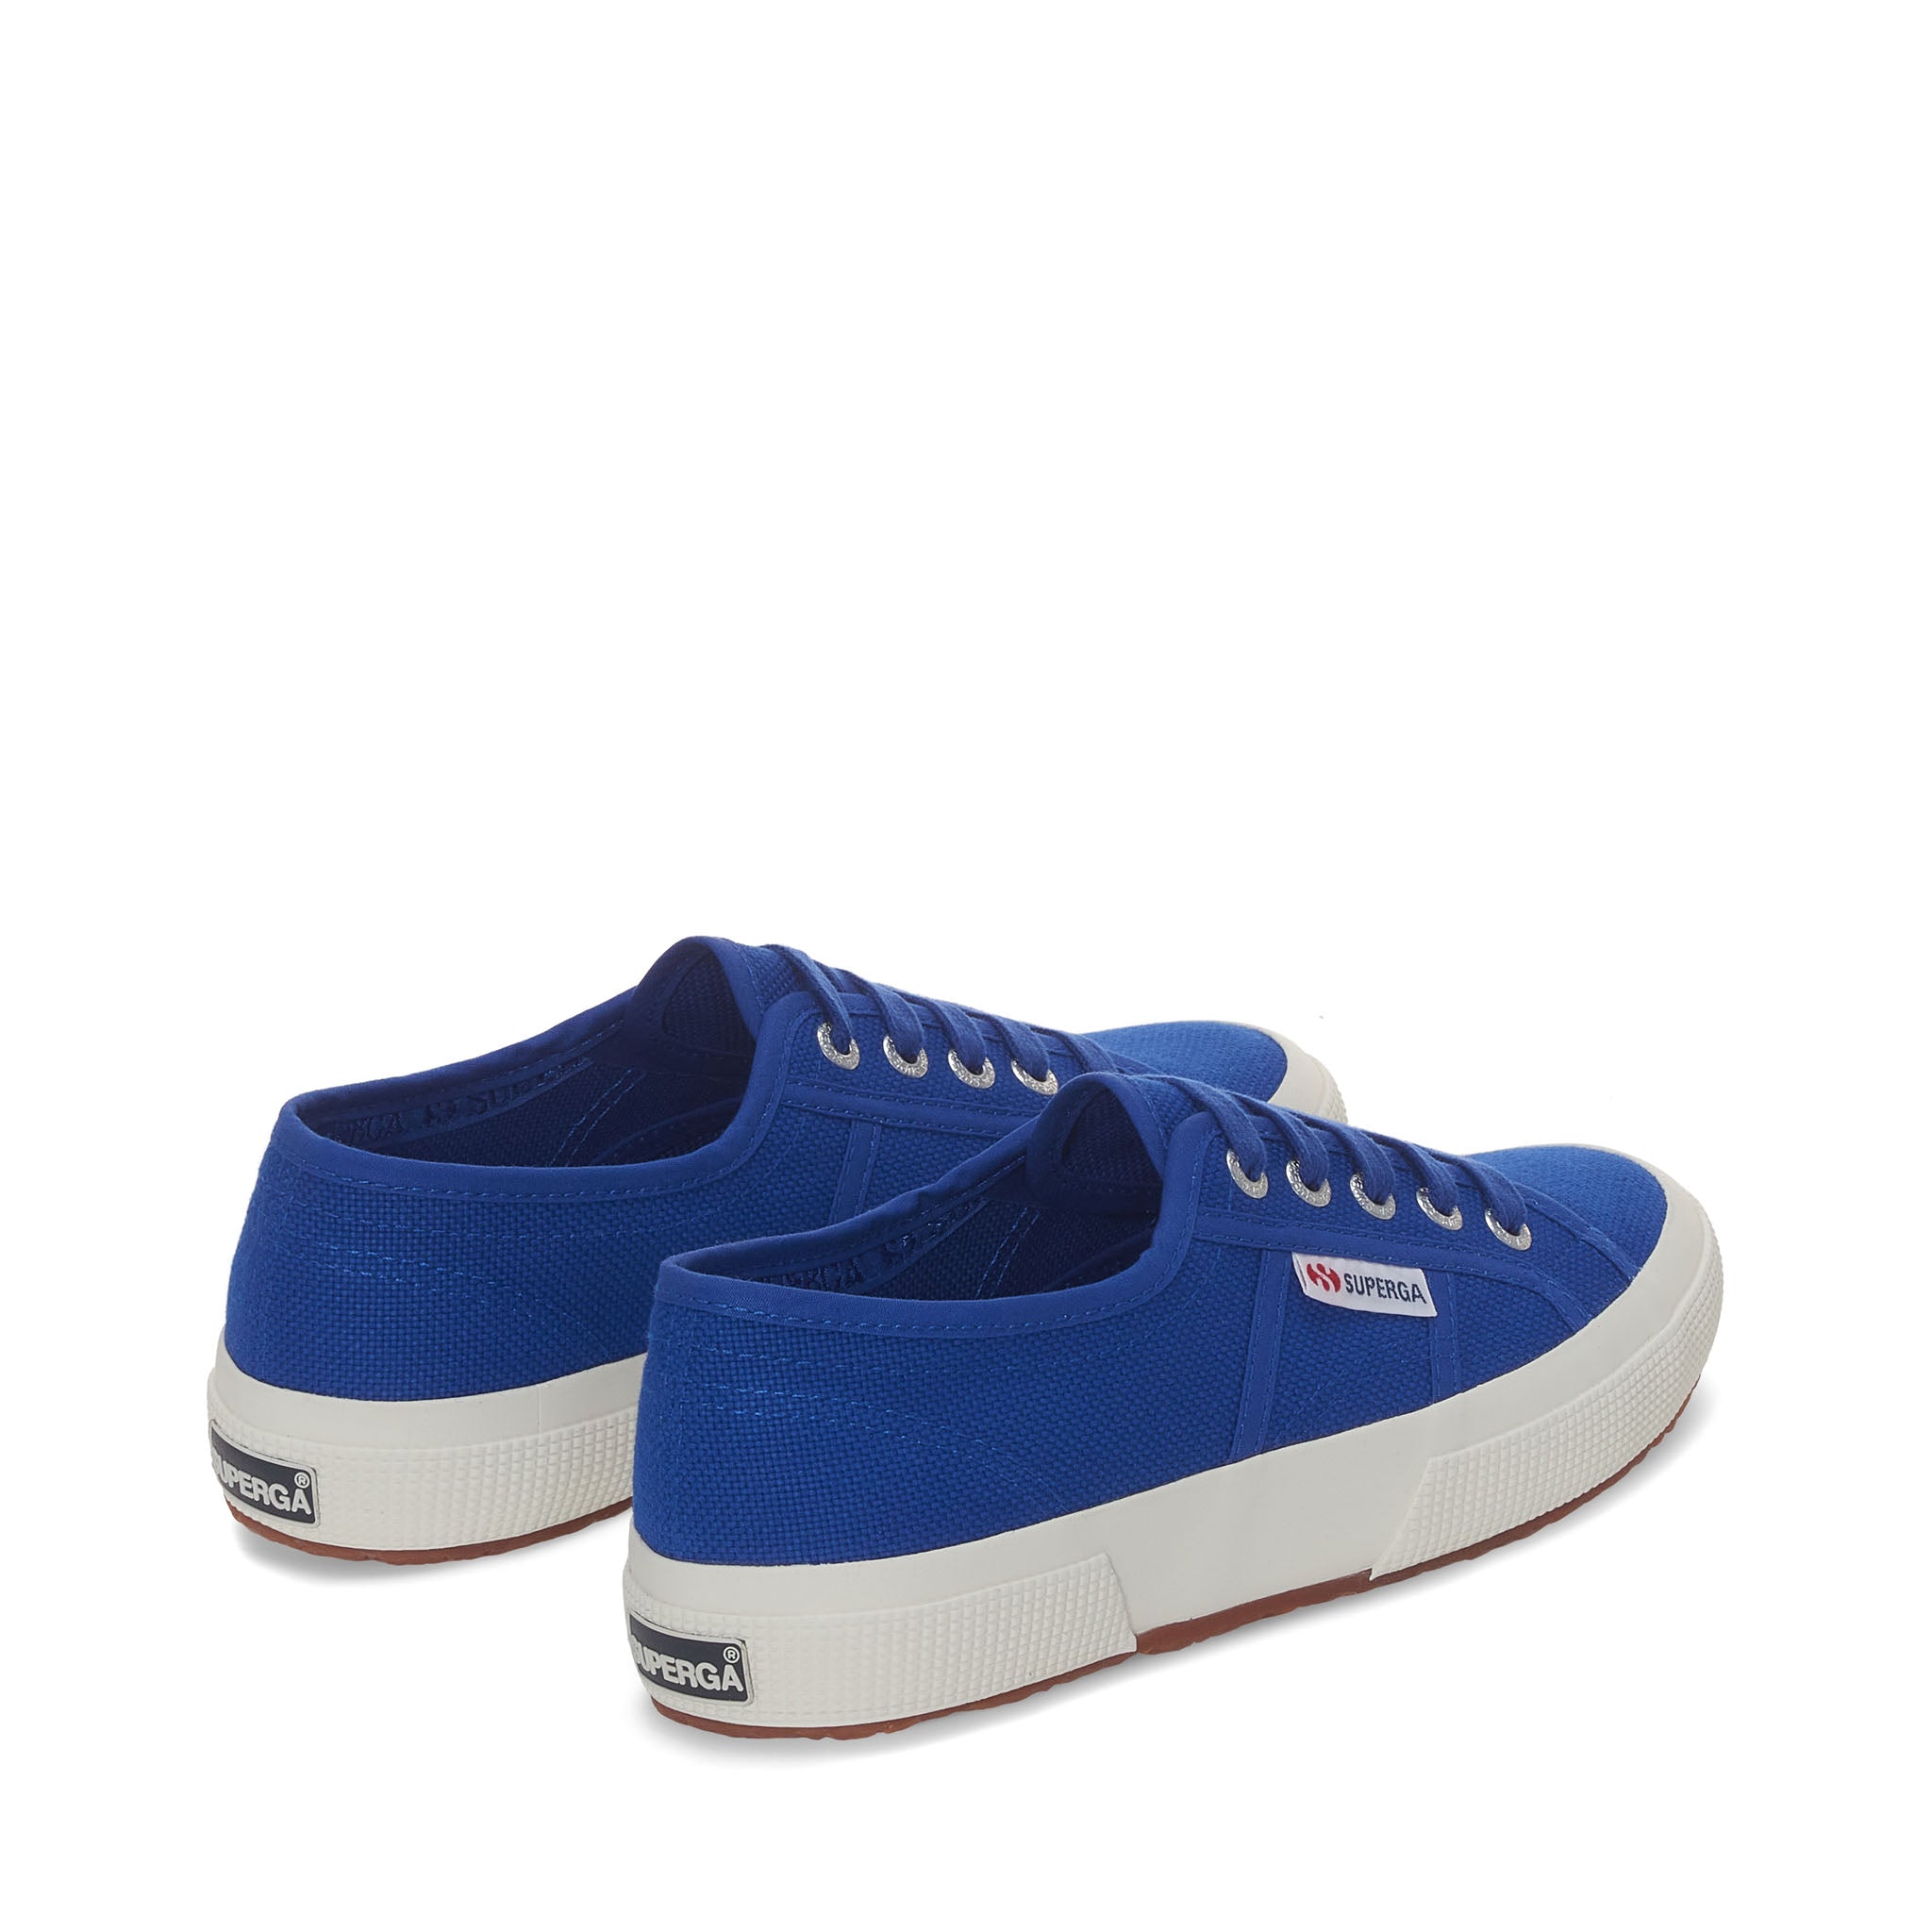 2750 Cotu Classic Sneakers - Royal Blue Avorio